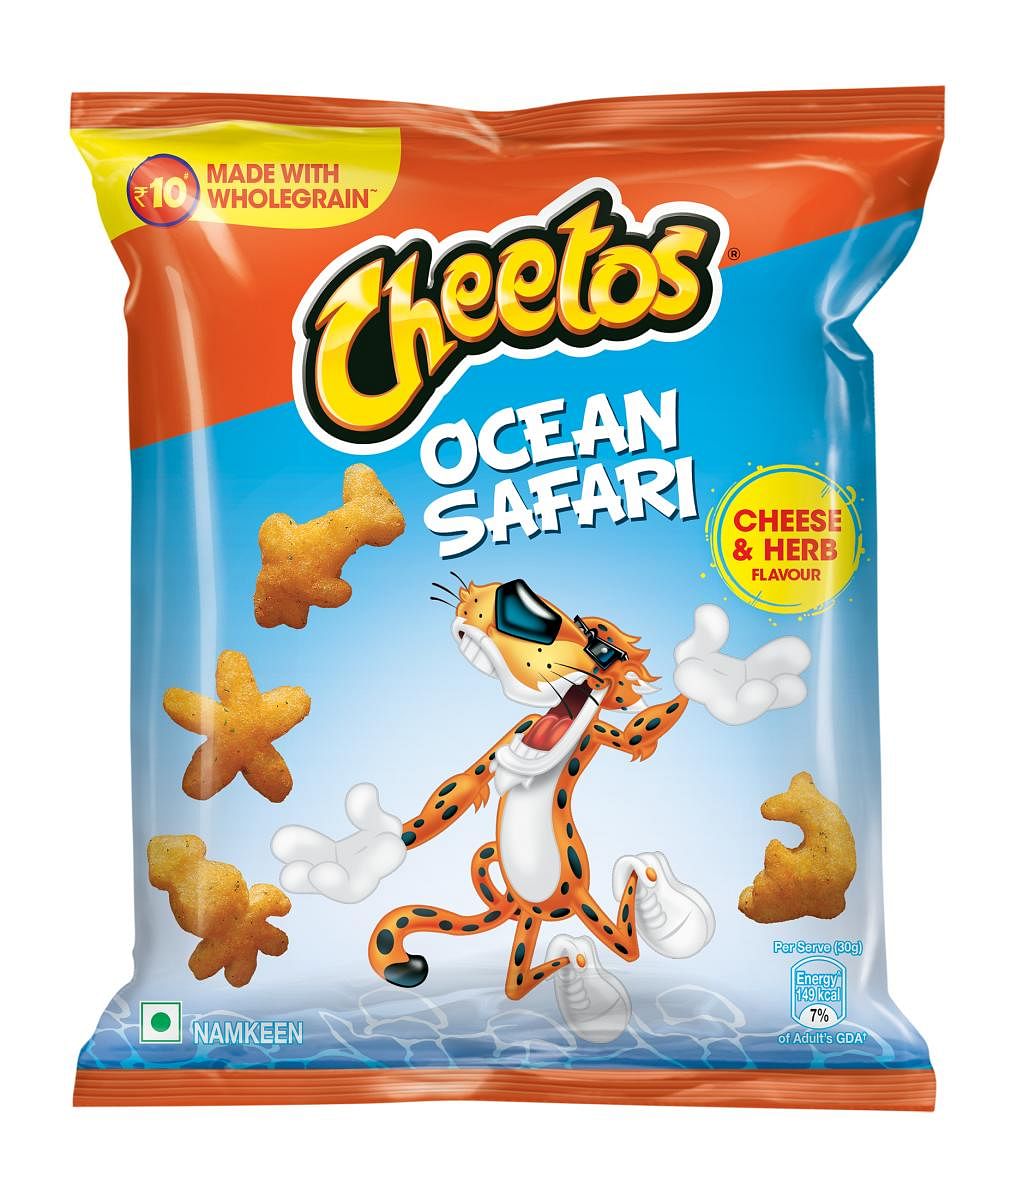 PepsiCo India launches New Cheetos Ocean Safari